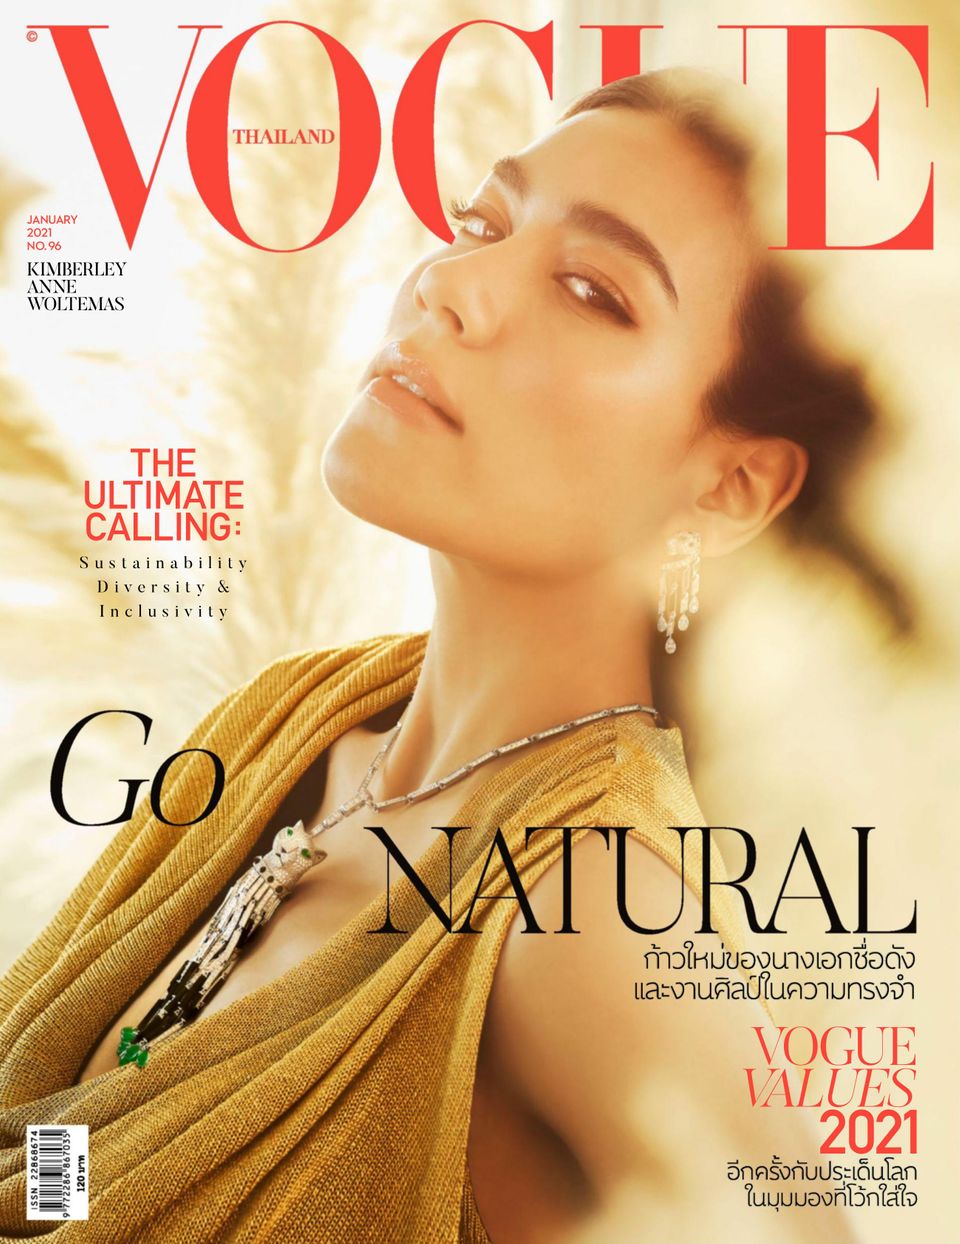 Vogue Thailand January 2021 (Digital) - DiscountMags.com